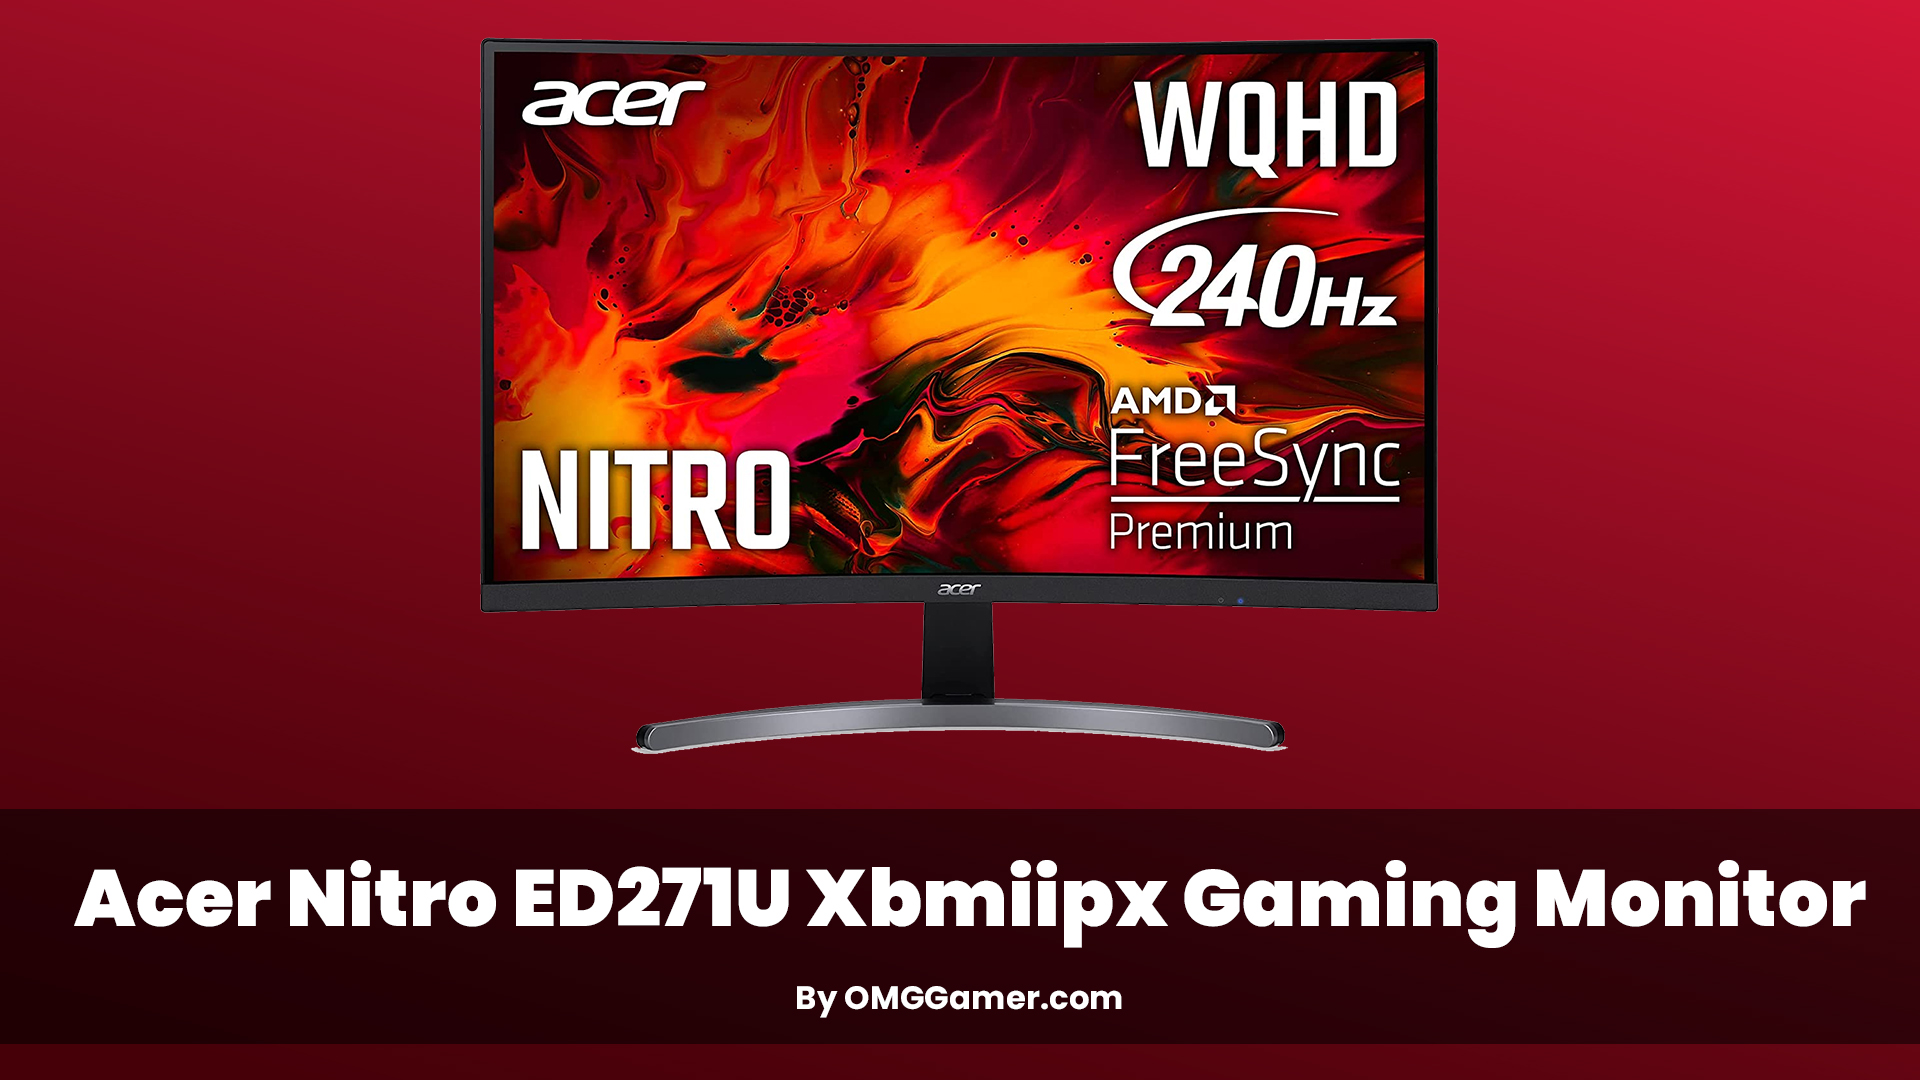 Acer Nitro ED271U Xbmiipx Gaming Monitor